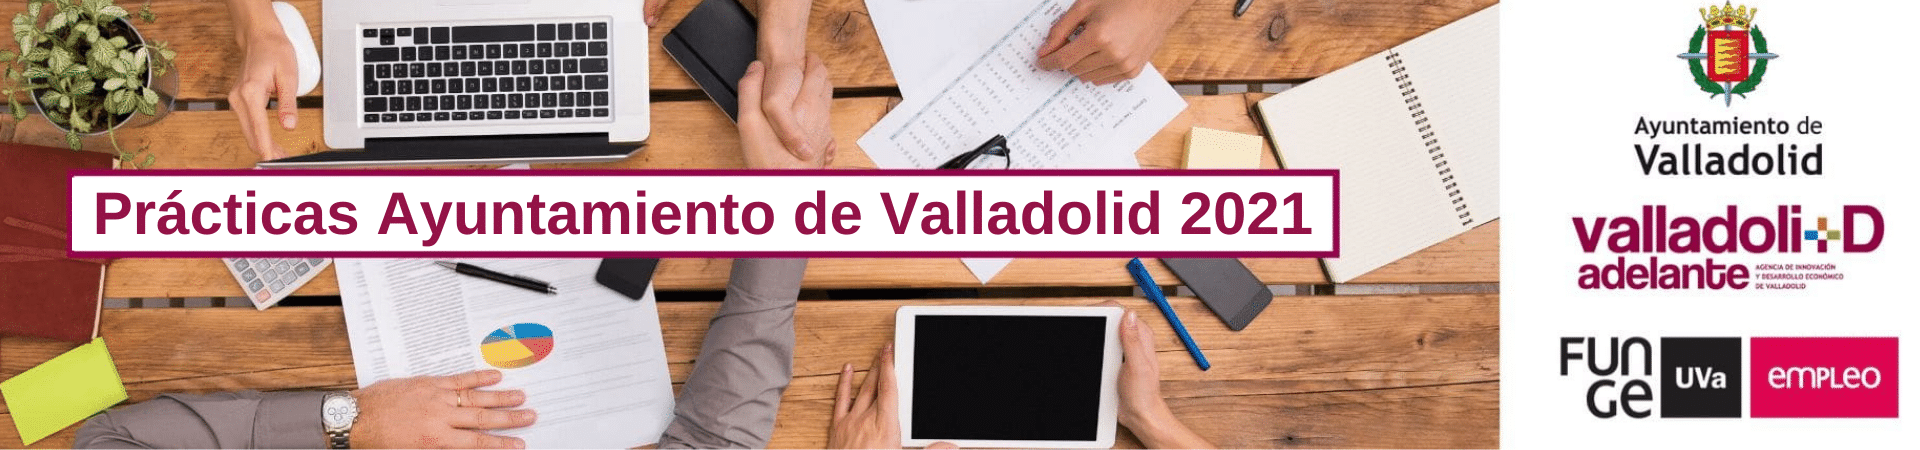 Prácticas Ayuntamiento de Valladolid 2021